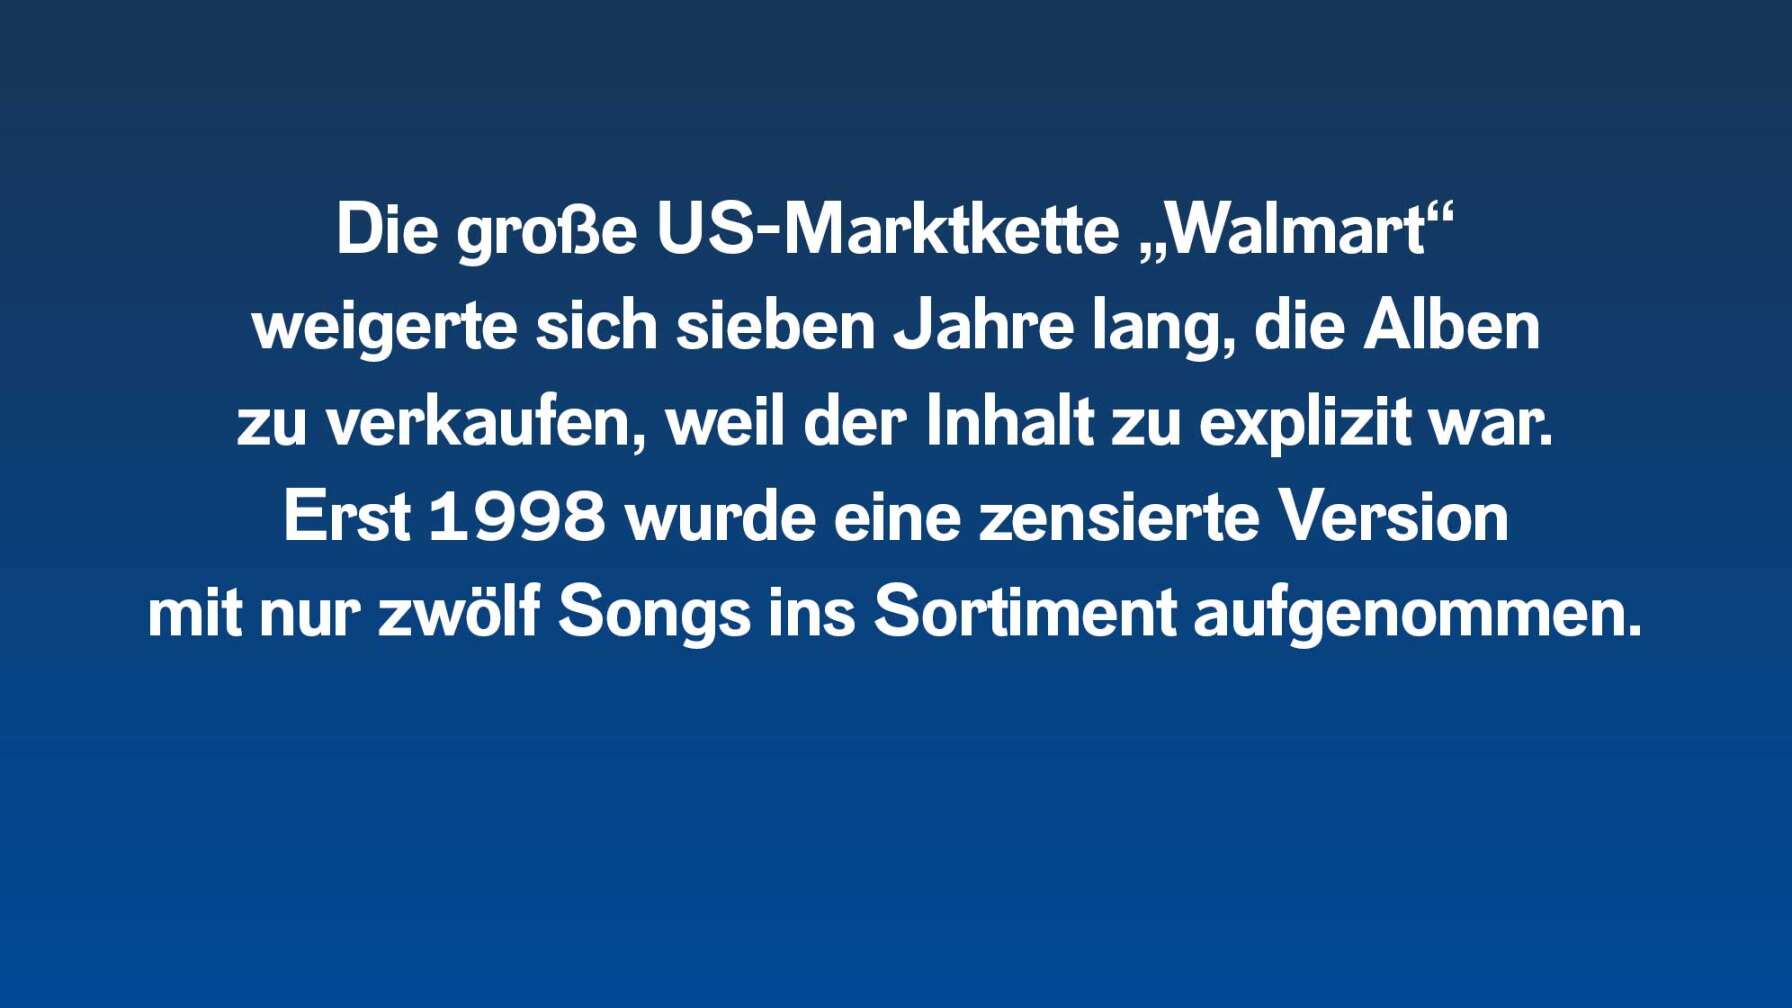 Die US-Marktkette Walmart weigerte sich sieben Jahre lang, die Alben zu verkaufen. Erst 1998 wurde eine zensierte Version ins Sortiment aufgenommen.